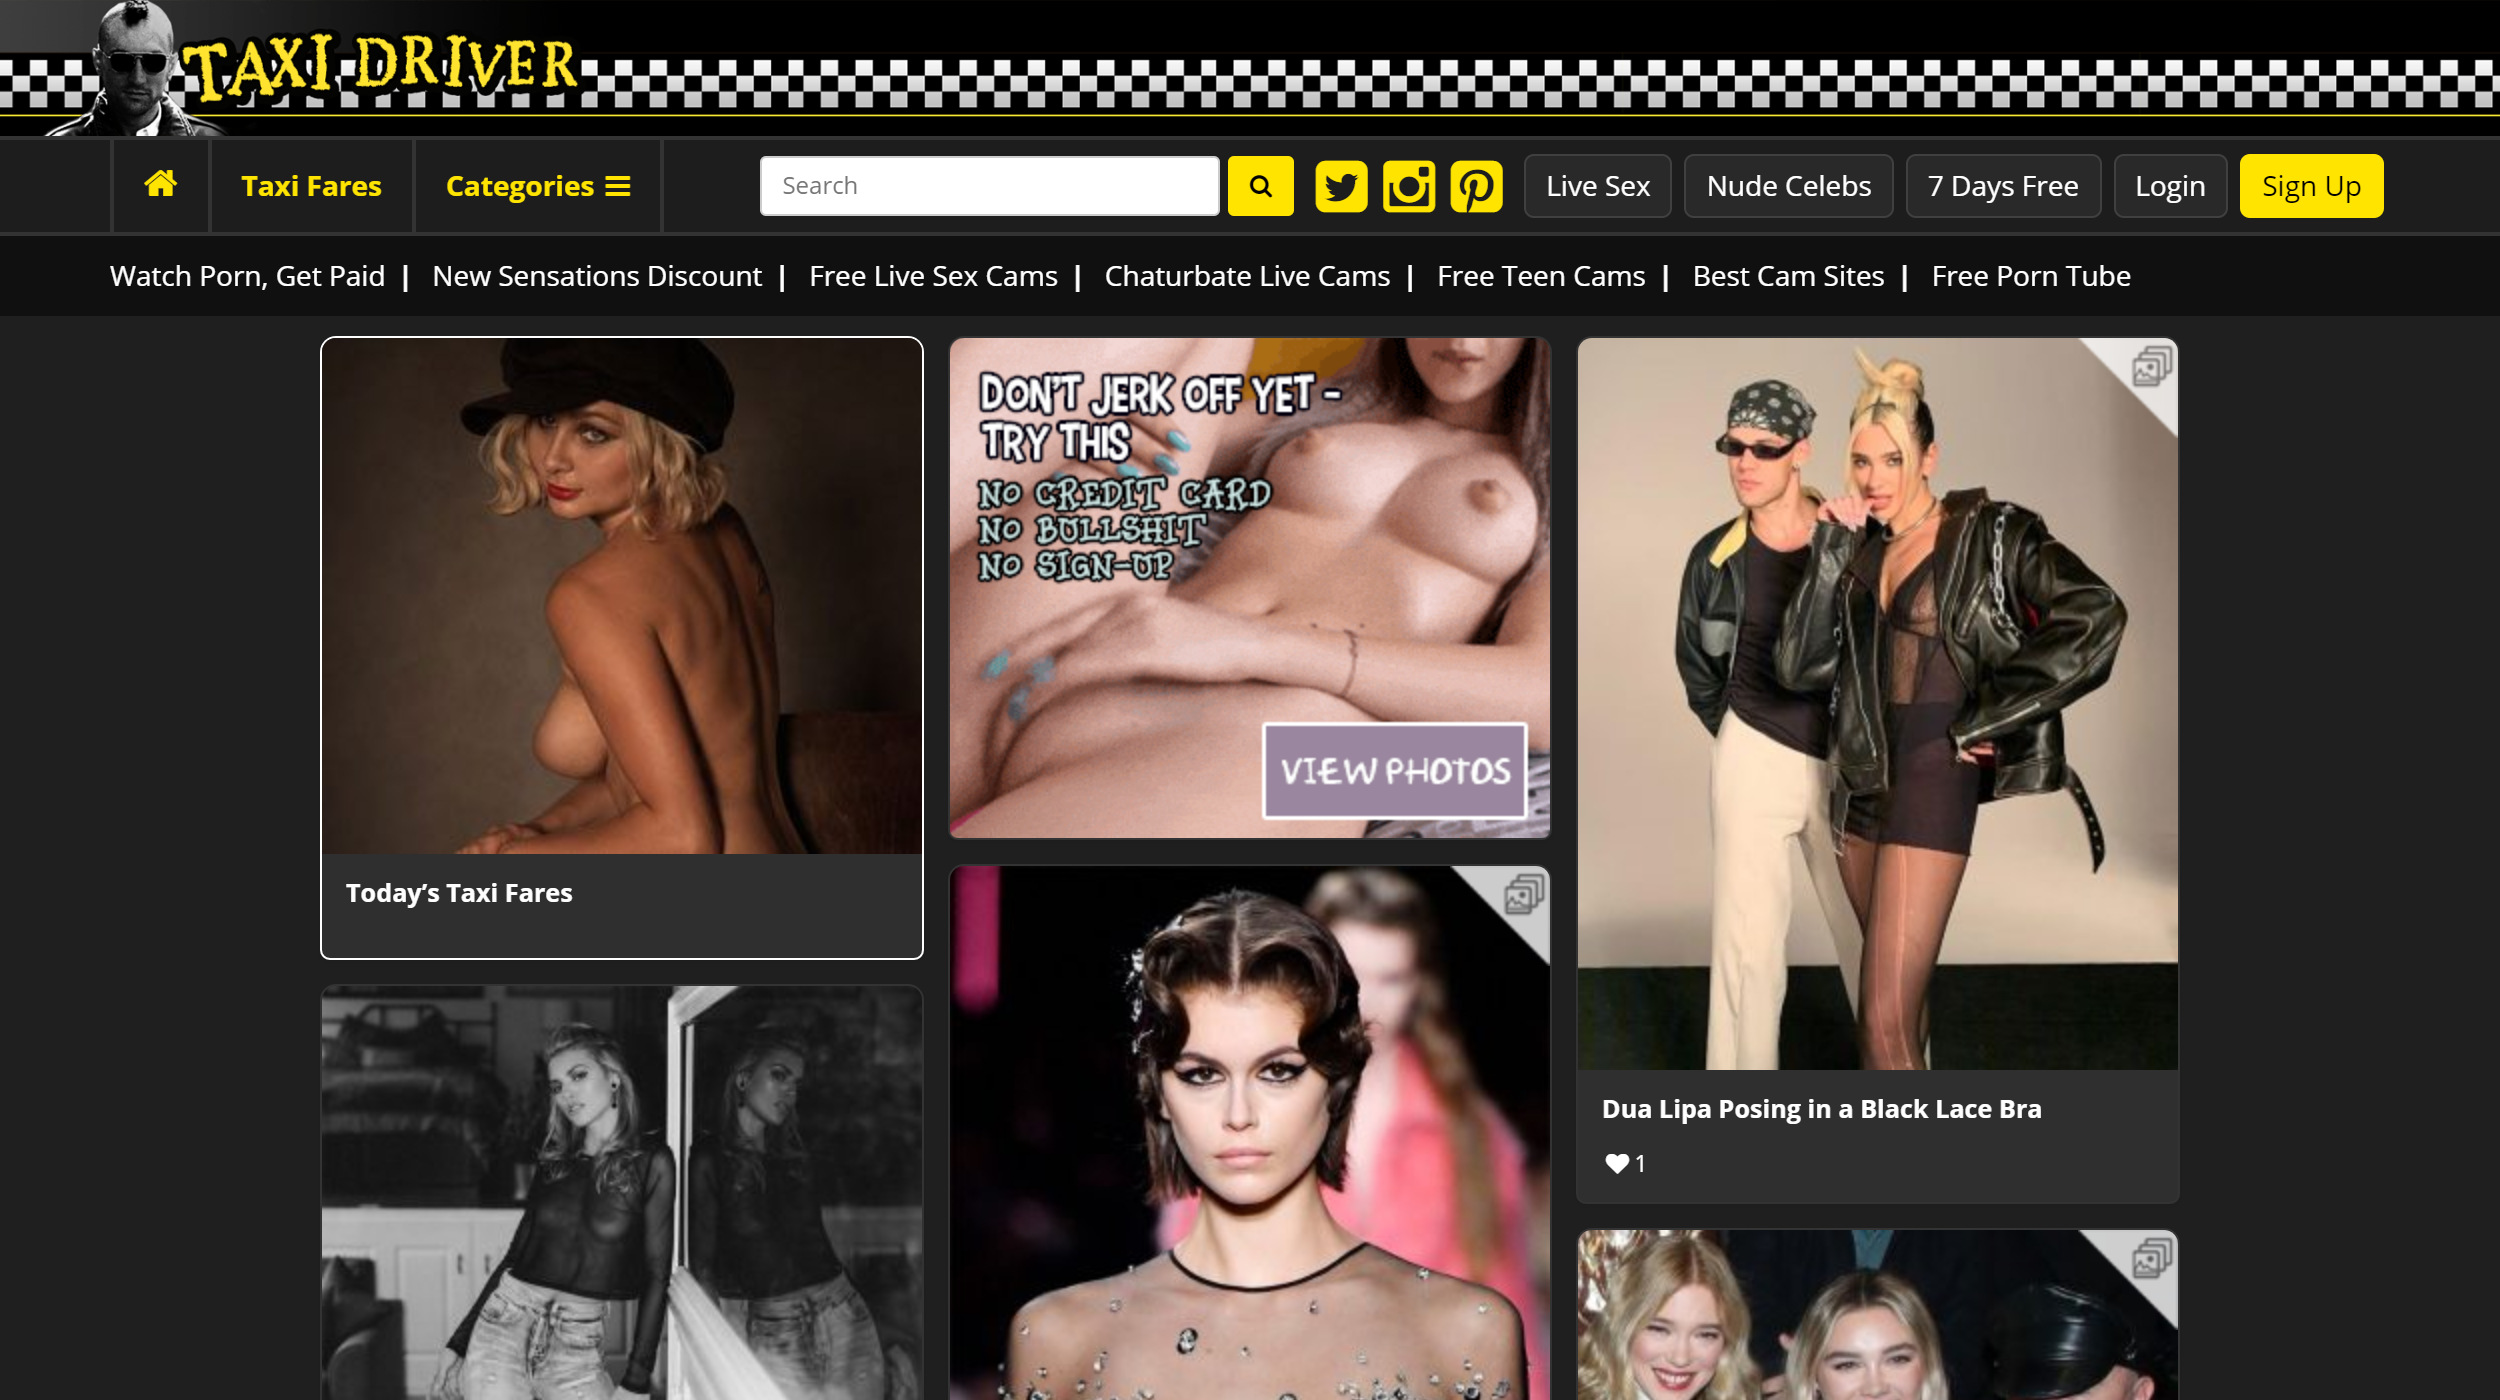 cazzy burton share free nude celeb forum photos